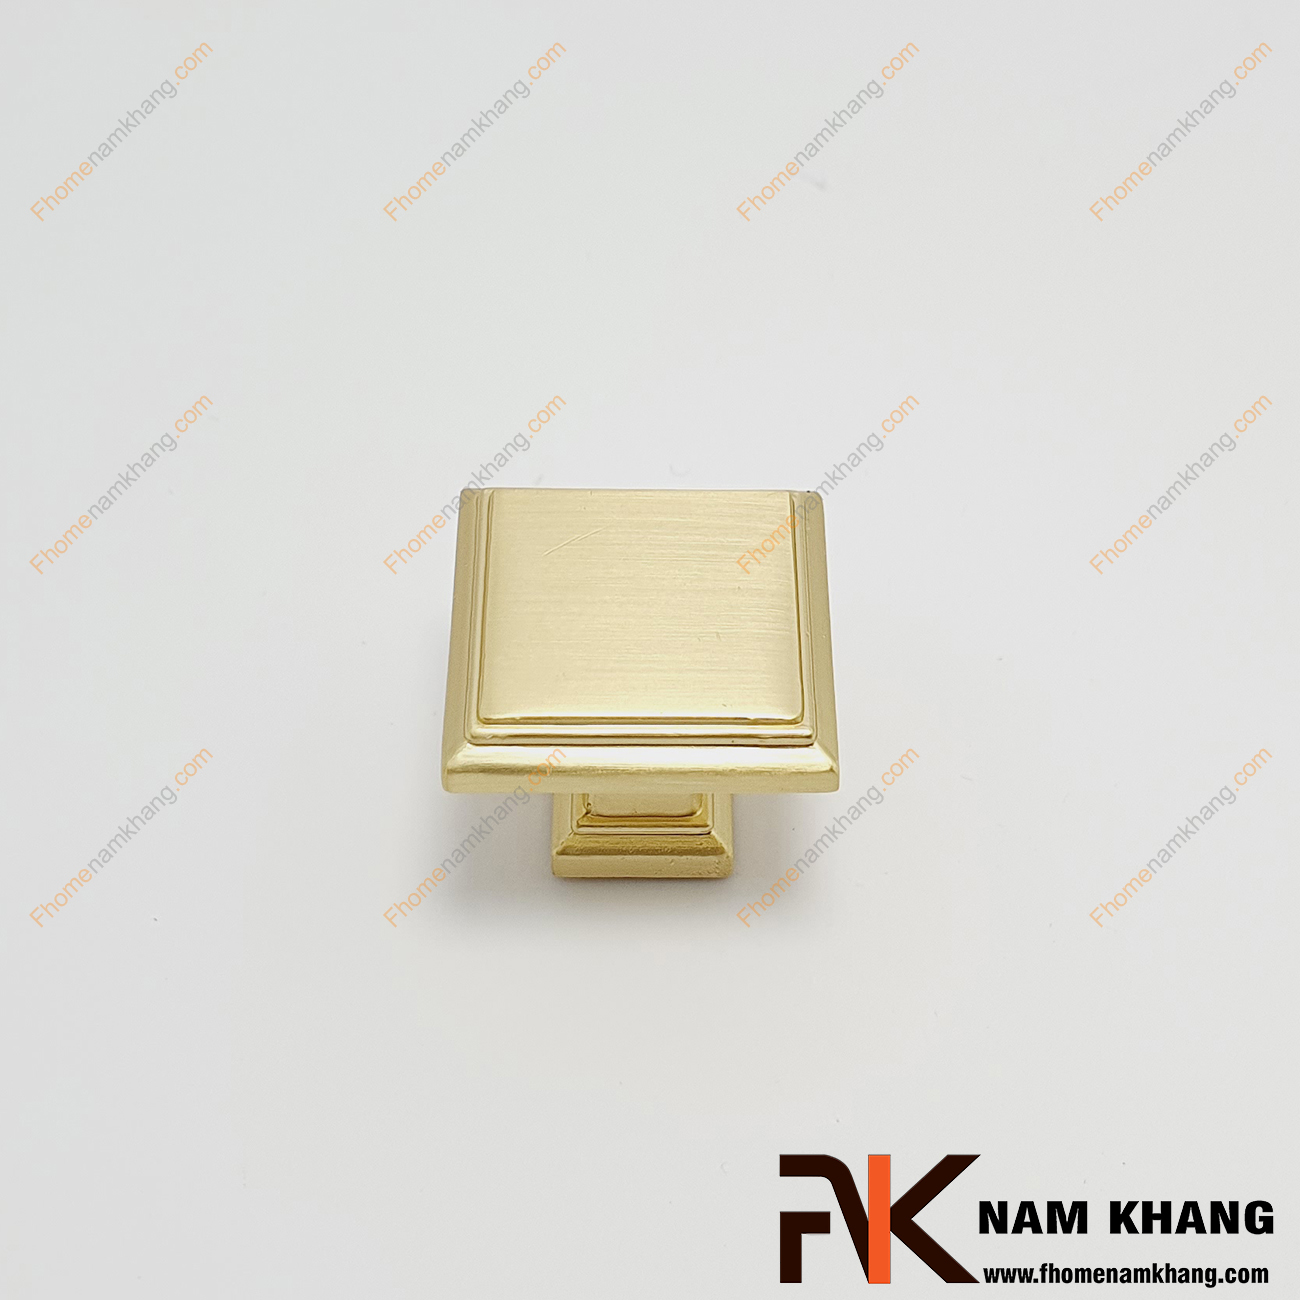 Núm cửa tủ màu vàng NK230N-VM có thiết kế đơn giản từ hợp kim cao cấp với khuôn dạng đầu vuông và đế vuông đứng. Sản phẩm giúp thực hiện thao tác đóng mở cánh cửa tủ trở nên dễ dàng và thuận tiện. 